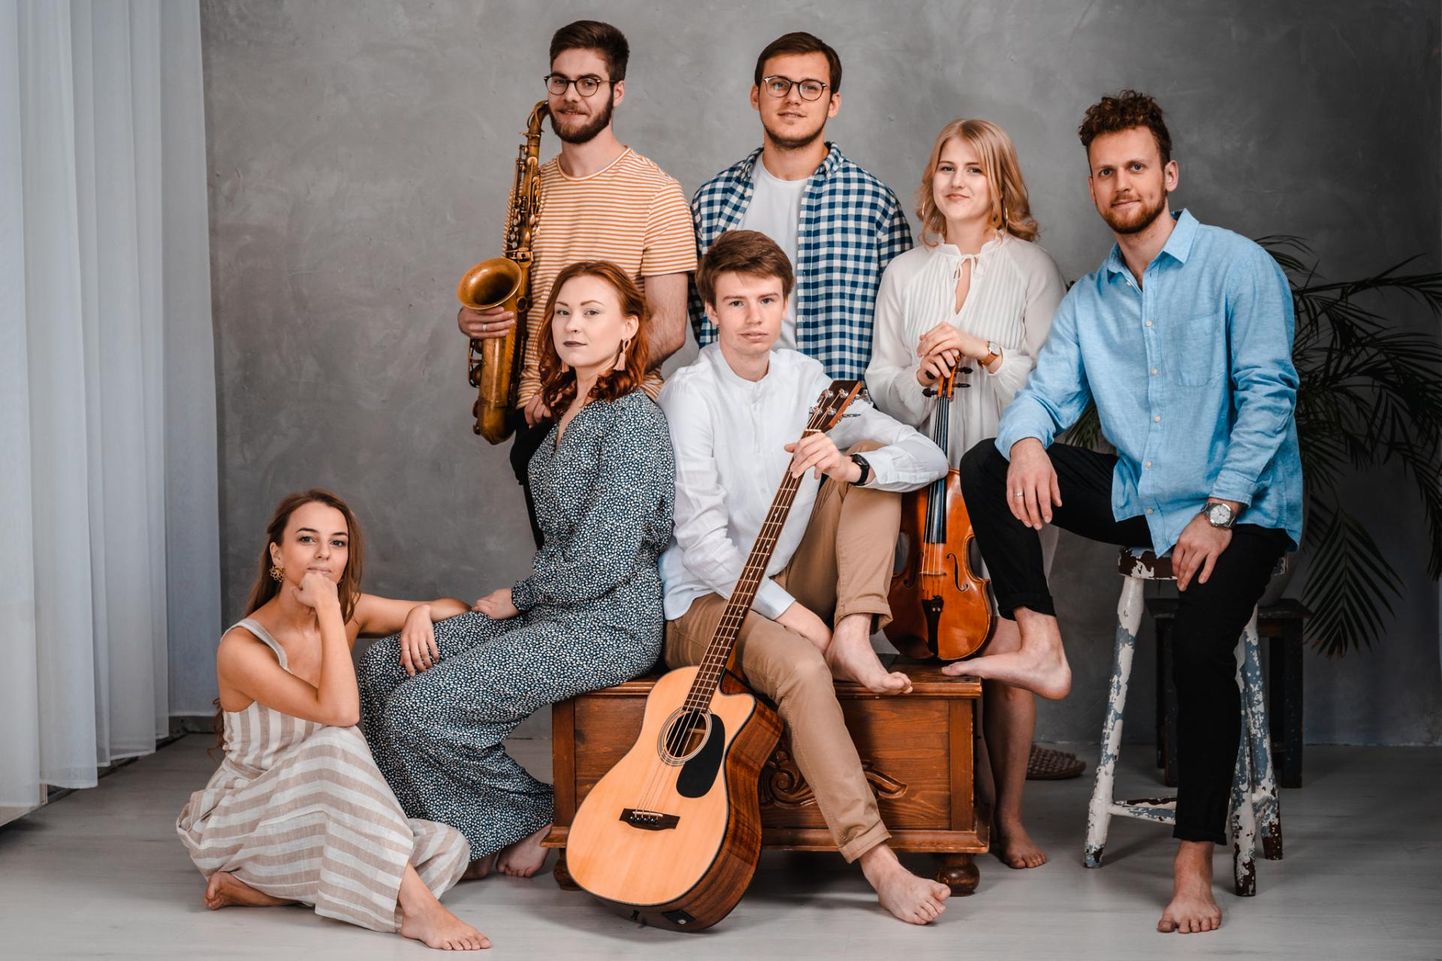 Muusikaline kollektiiv Pillikud ühendab endas džässi, folki ja poppi ning ammutab inspiratsiooni eesti keelest, loodusest ja rahvakultuurist.